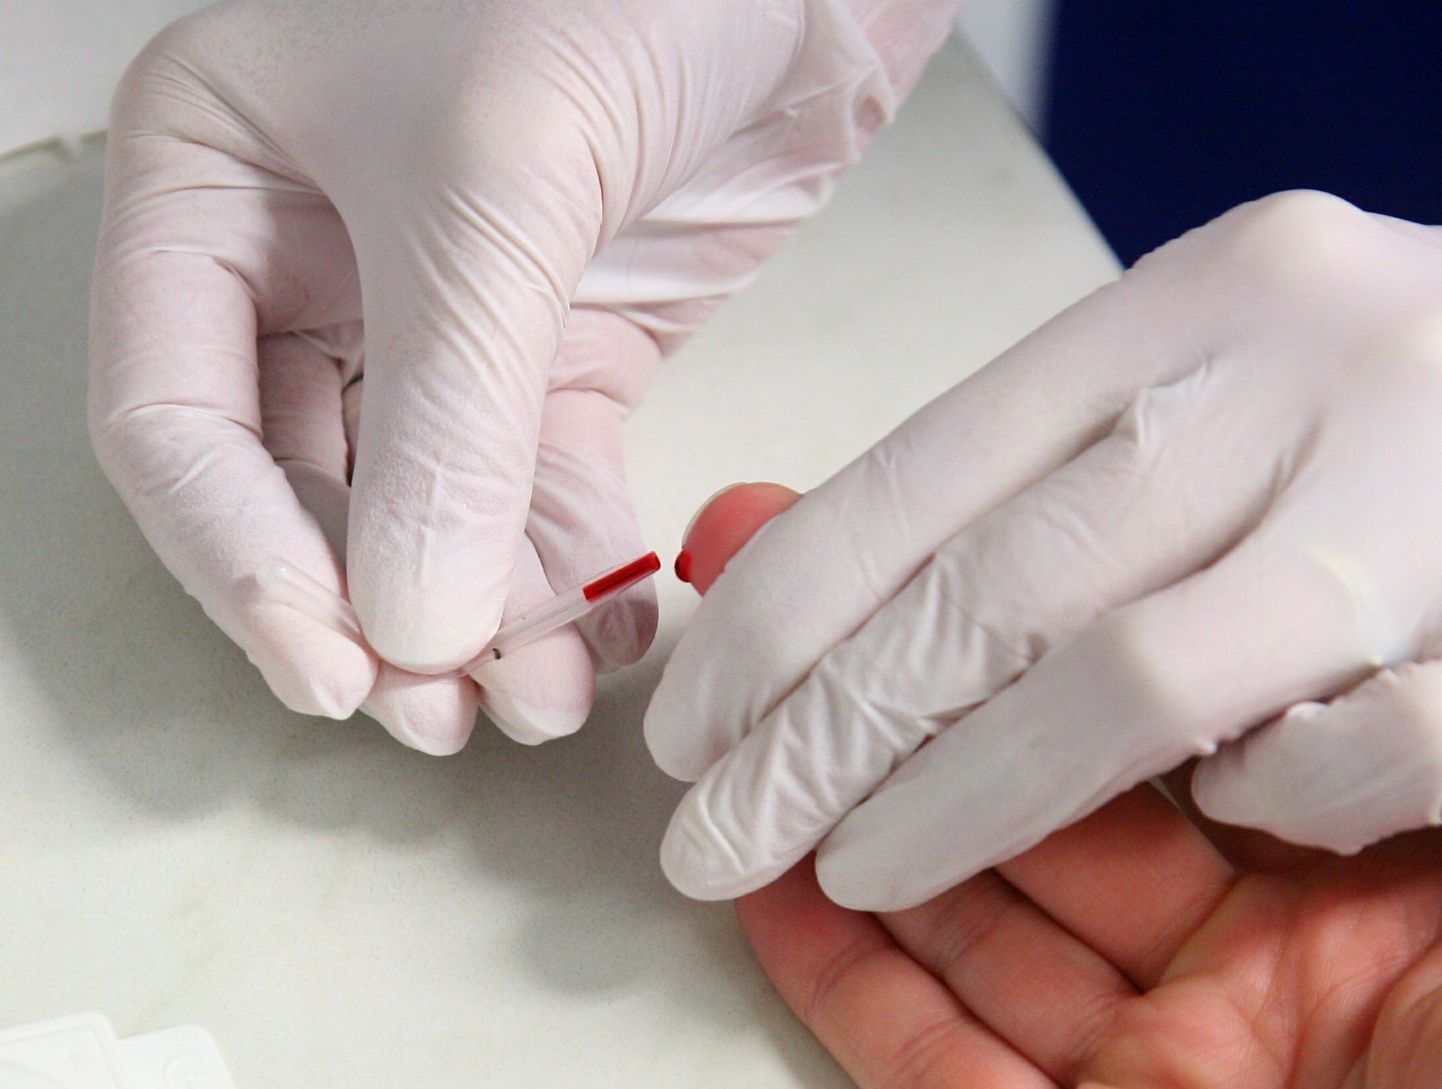 HIV-kiirtestid aitavad haiguse levikut piirata ja inimesel õigel ajal abi saada.